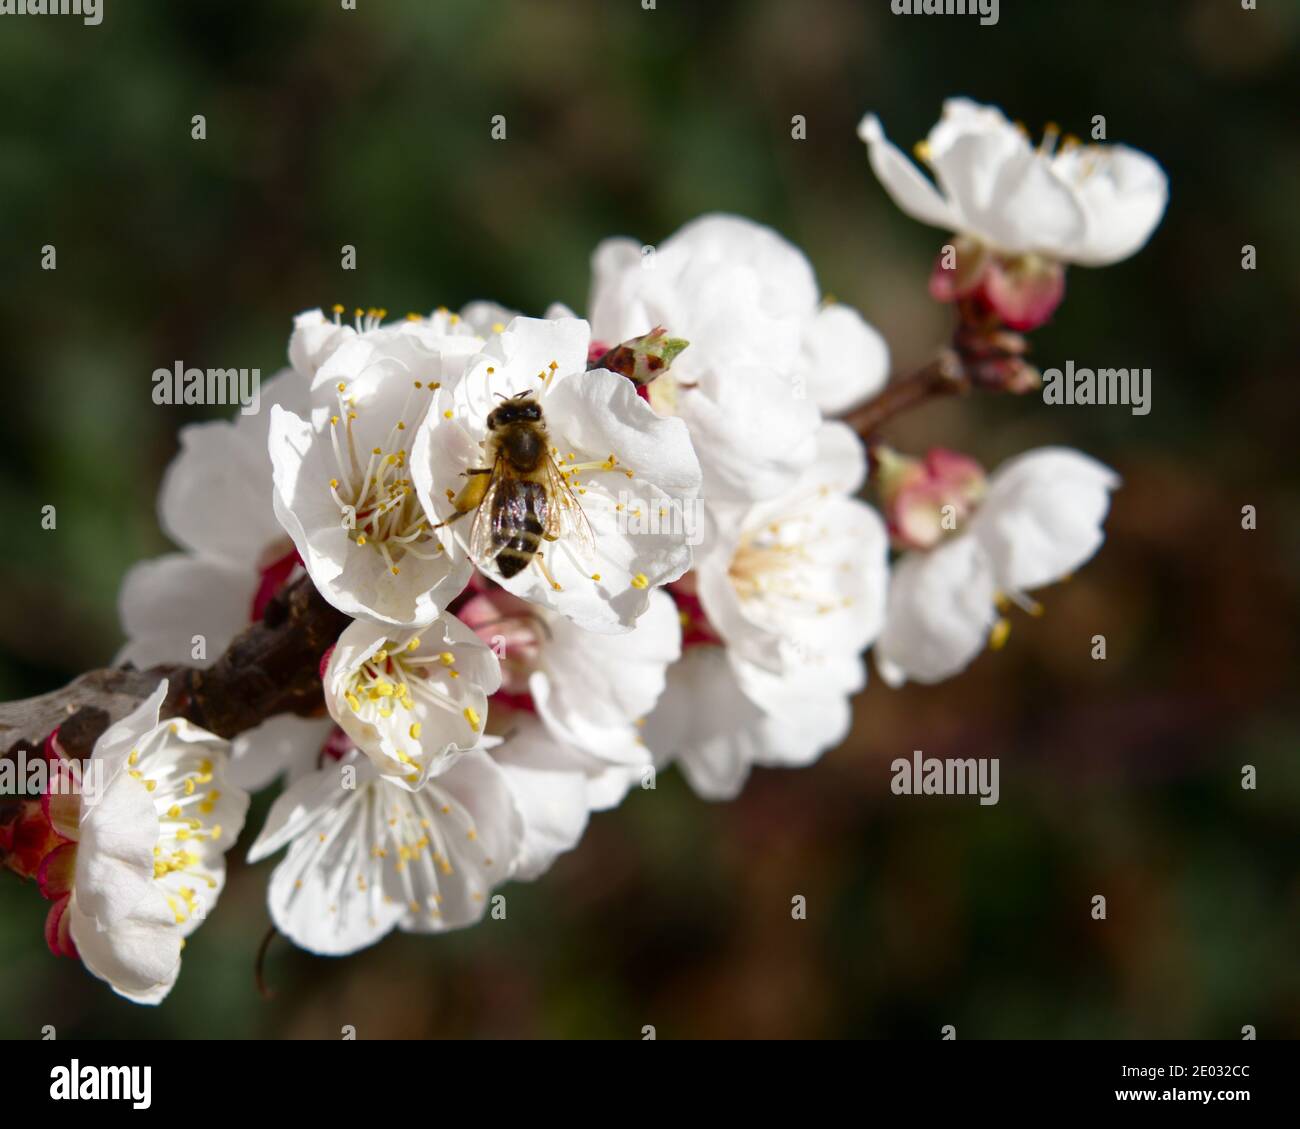 Abricot fleuri avec abeille sur fleur Banque D'Images